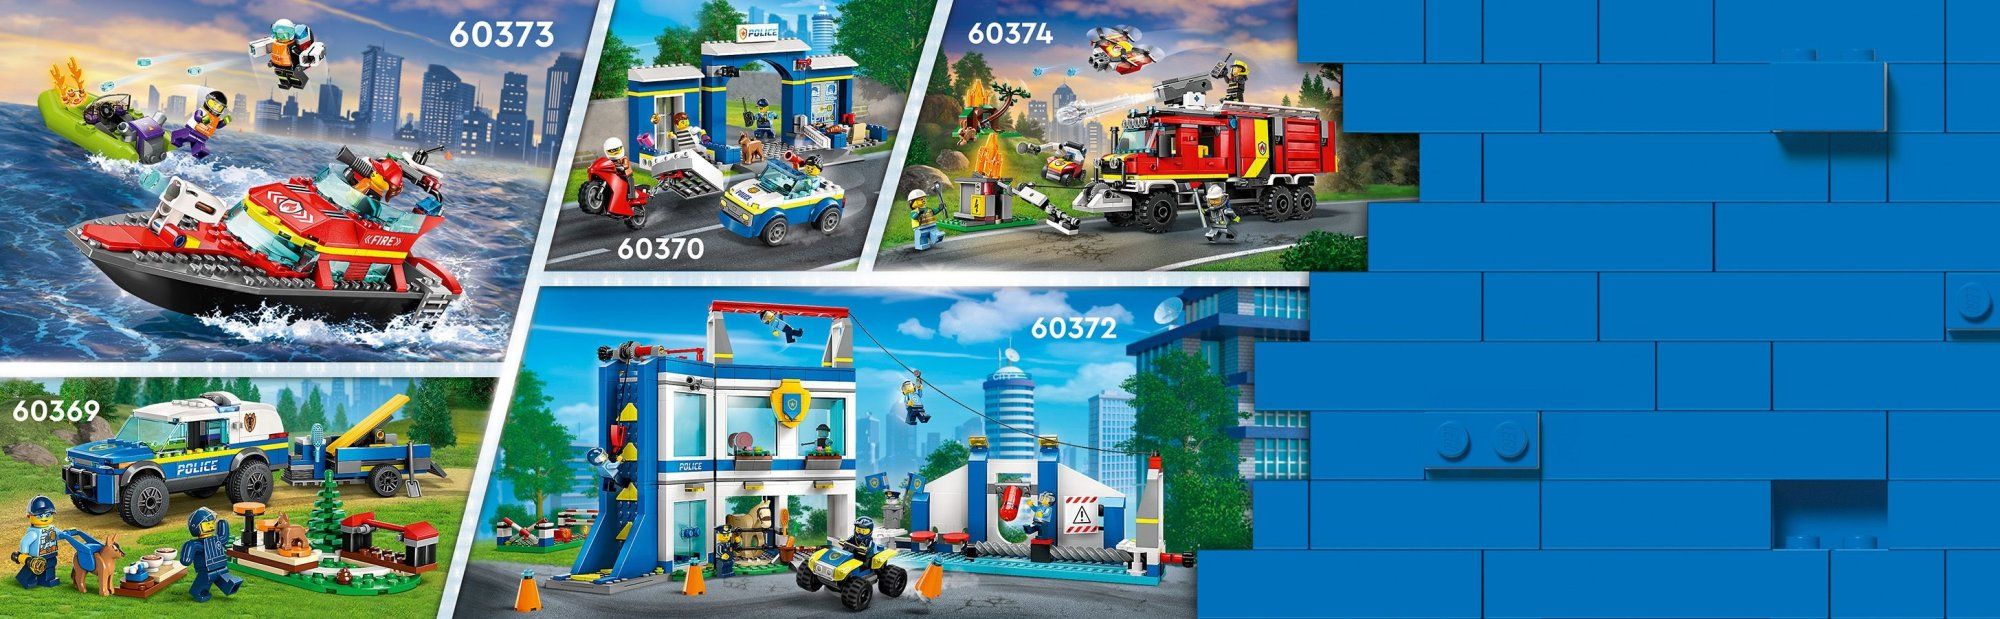 LEGO City 60373 Hasičská záchranná loď a člun